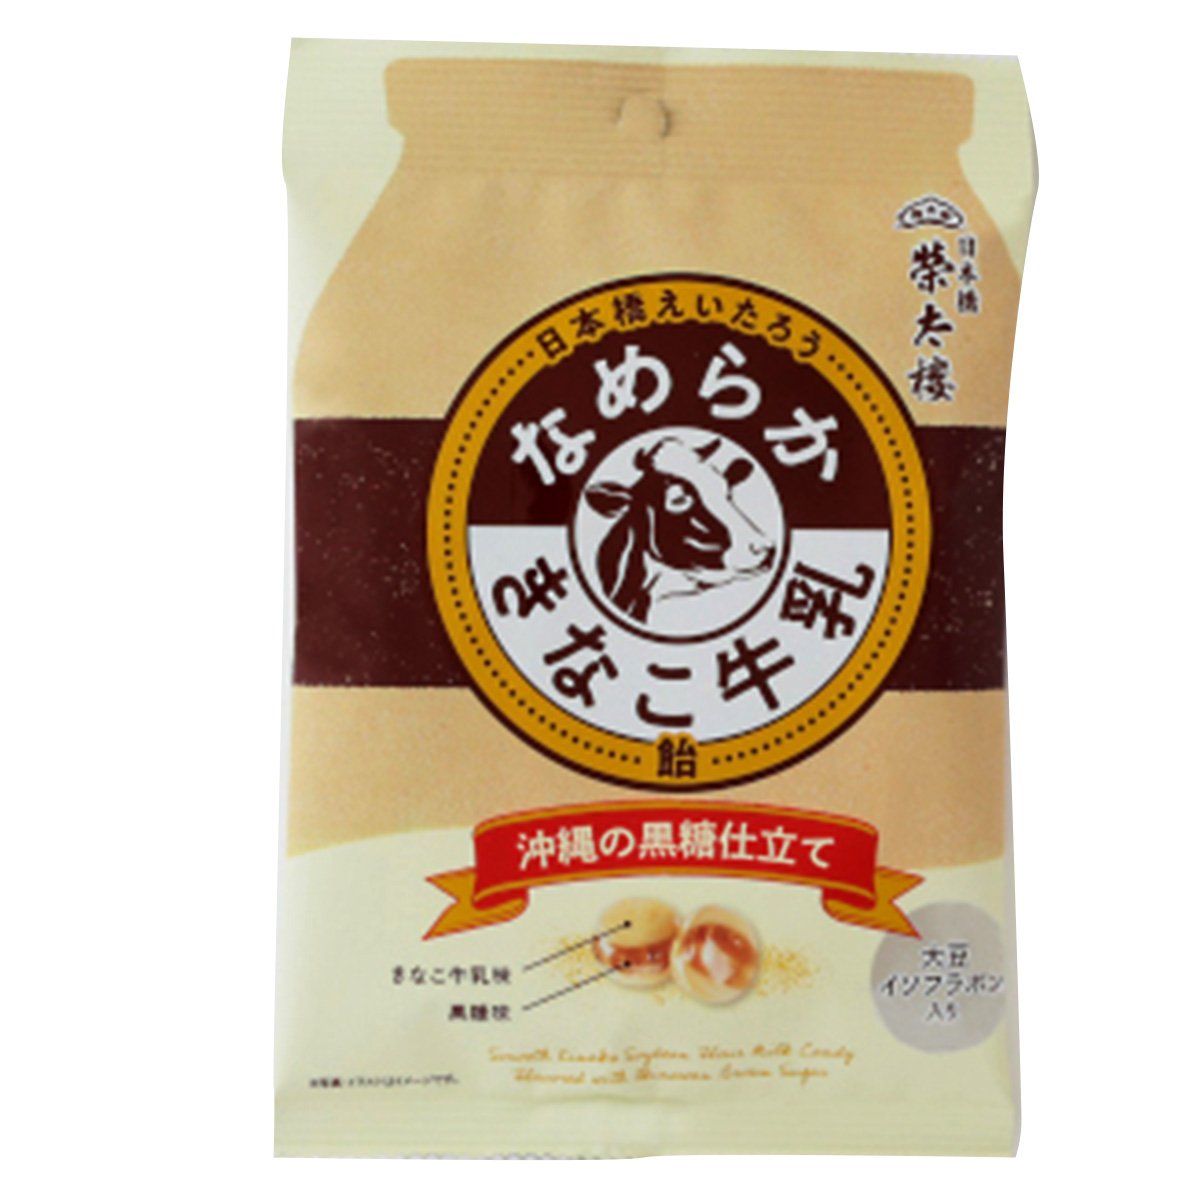 【6個入リ】榮太樓 ナメラカキナコ牛乳 黒糖仕立 70g